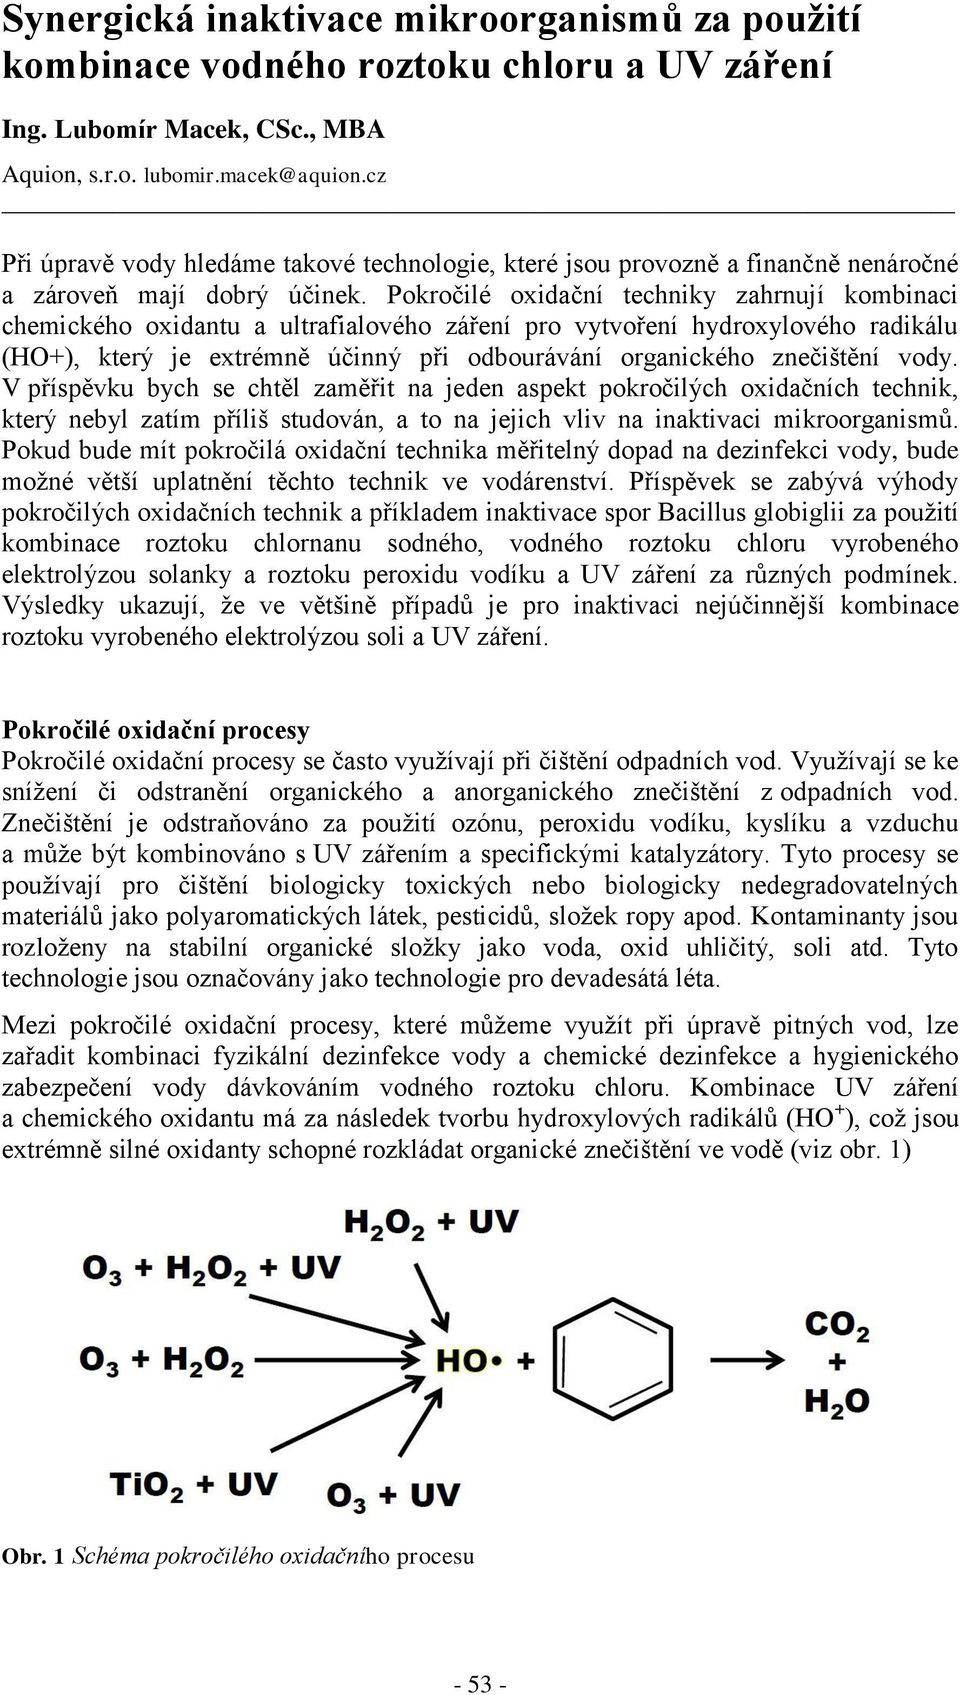 Pokročilé oxidační techniky zahrnují kombinaci chemického oxidantu a ultrafialového záření pro vytvoření hydroxylového radikálu (HO+), který je extrémně účinný při odbourávání organického znečištění